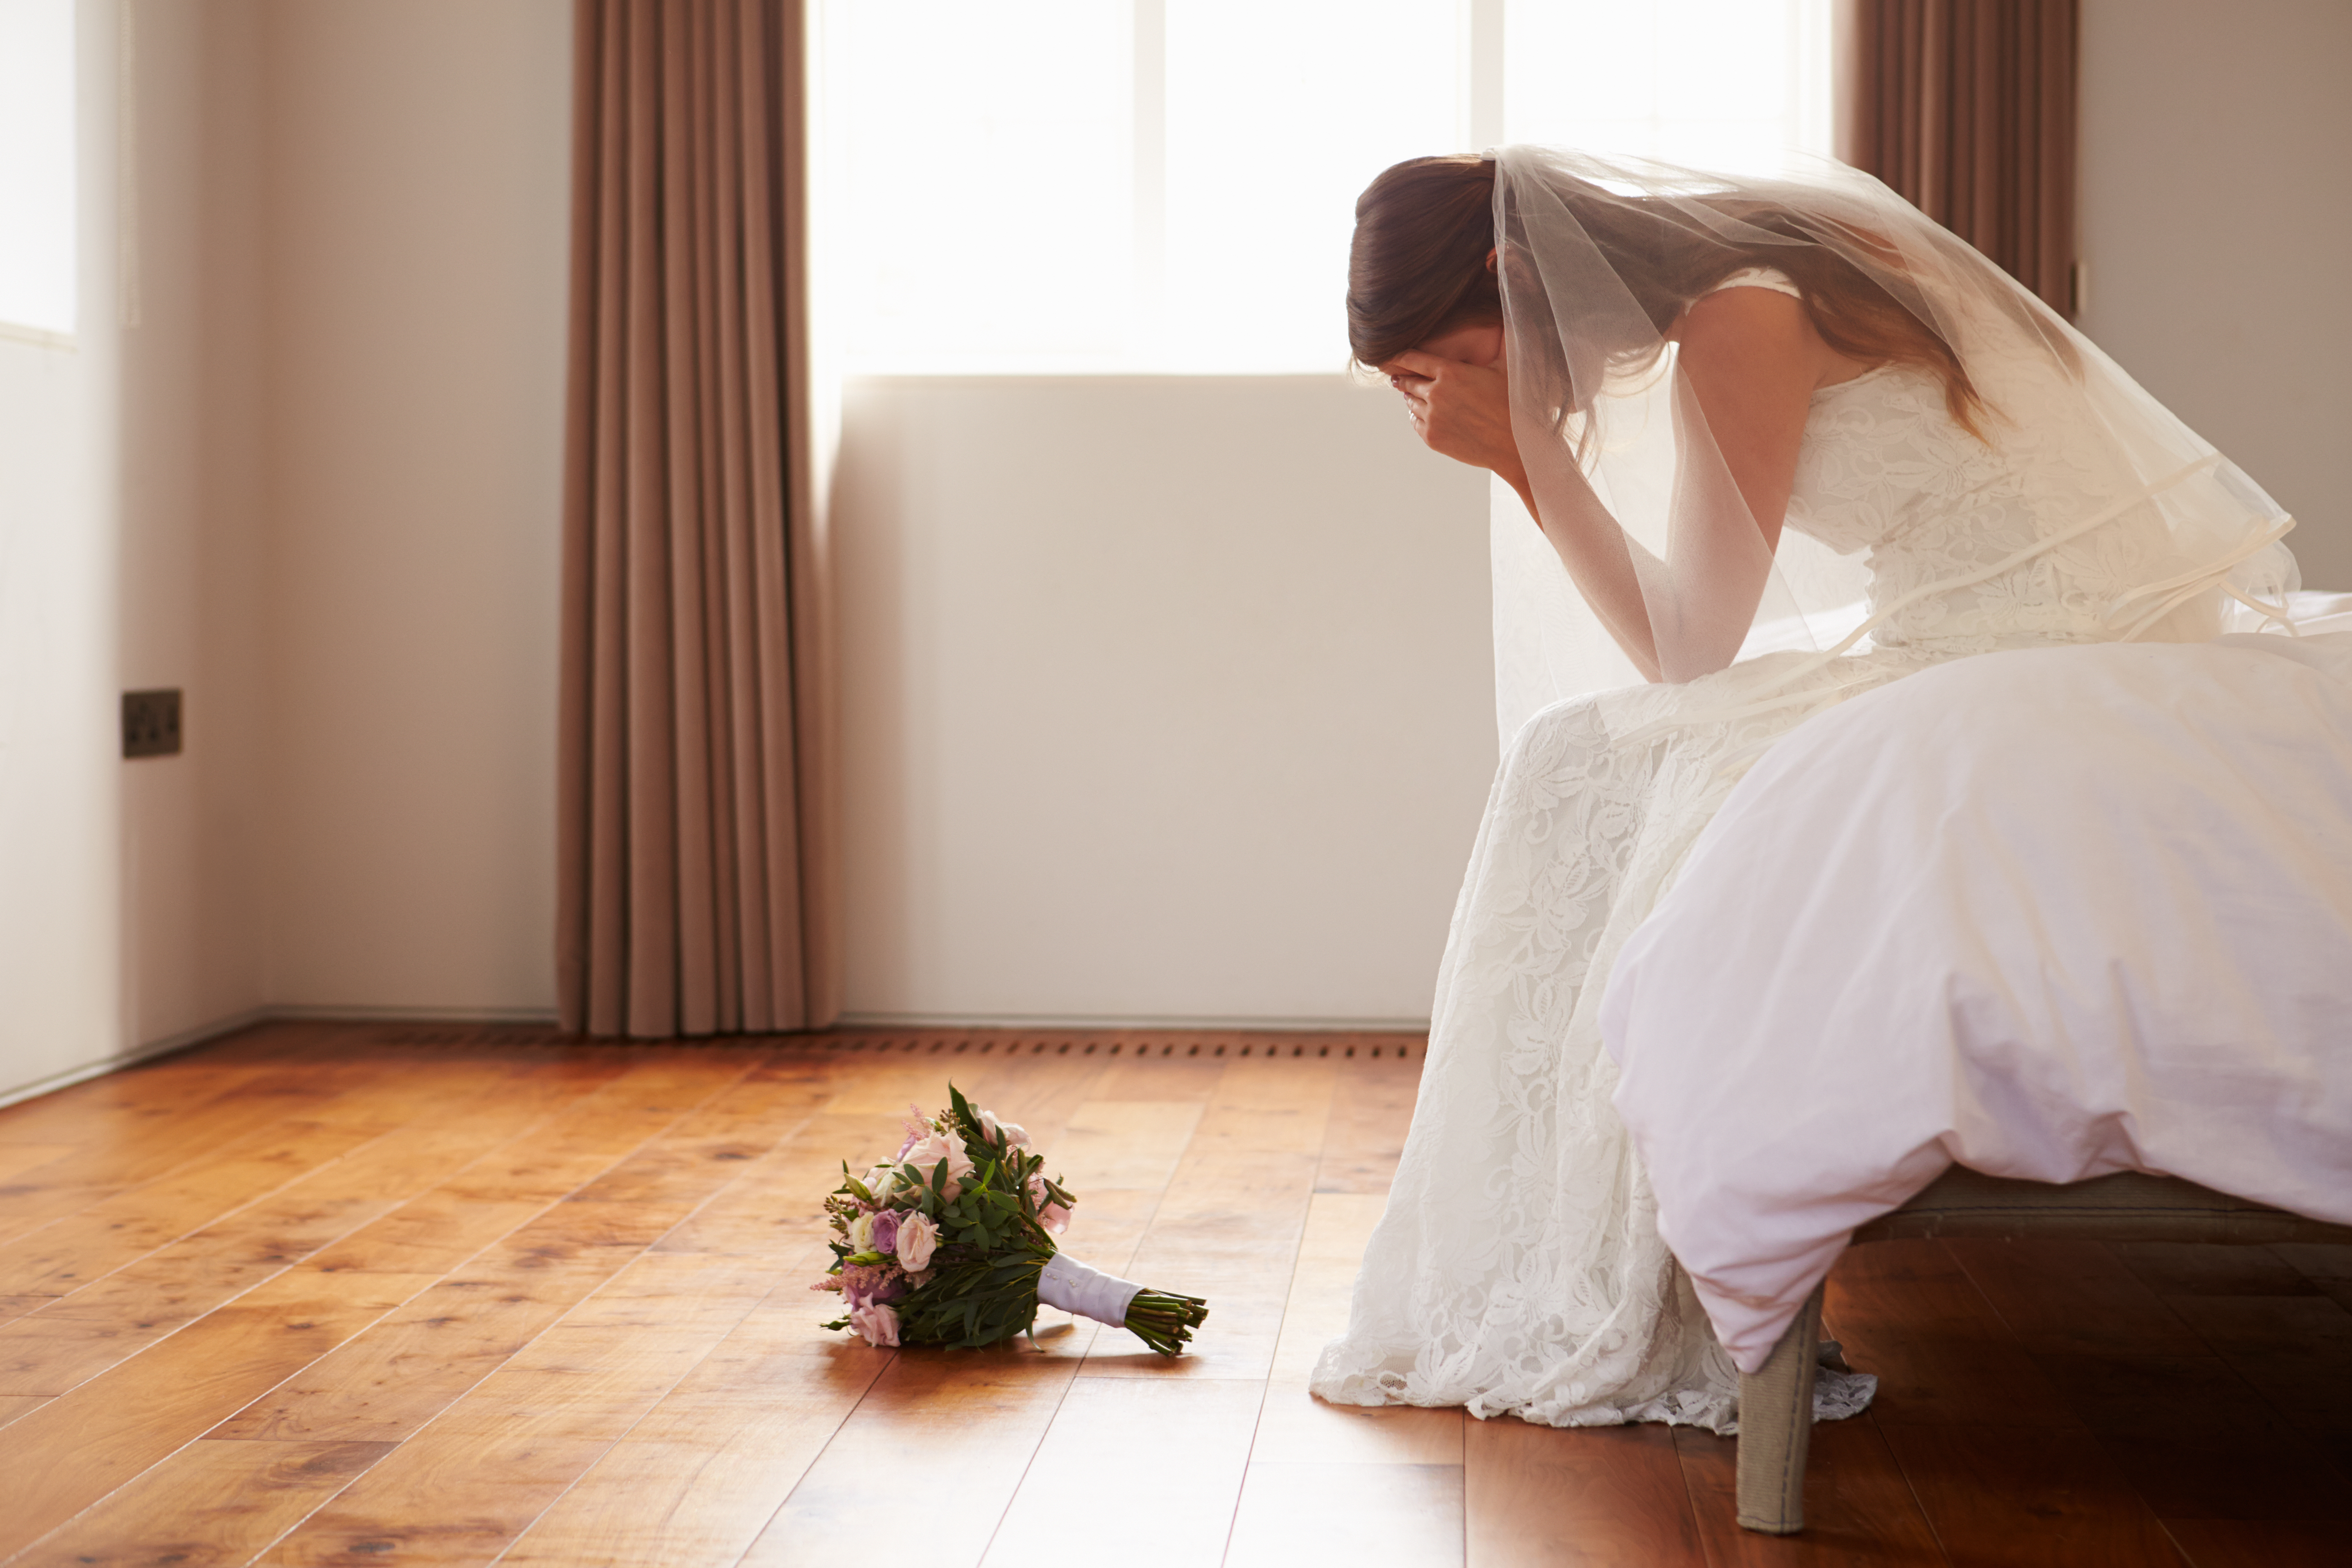 La novia está llorando | Fuente: Getty Images